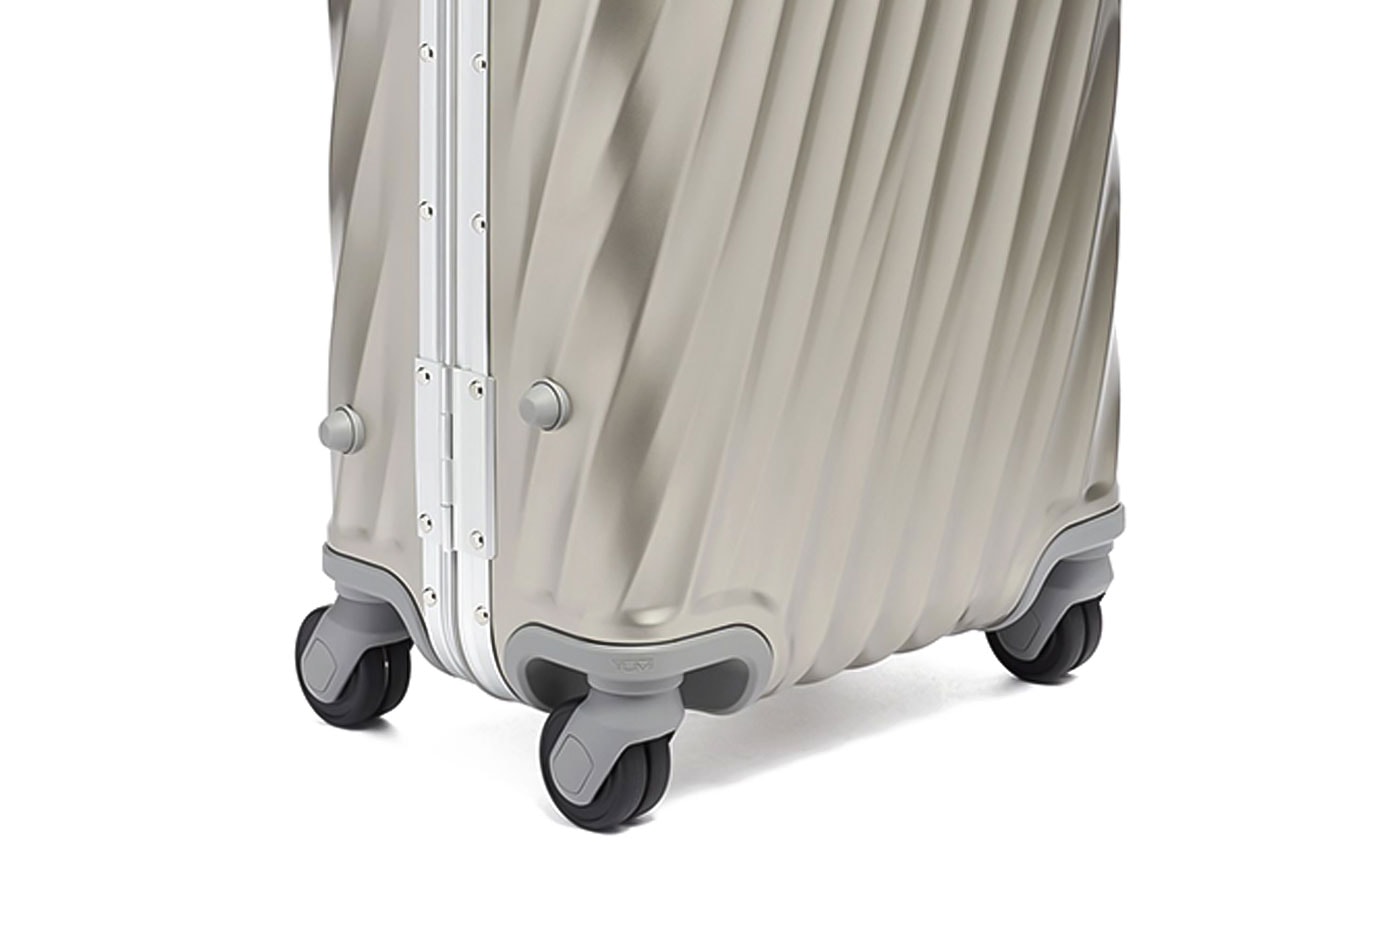 TUMI 19 Degree Titanium Luggage Series | Hypebeast